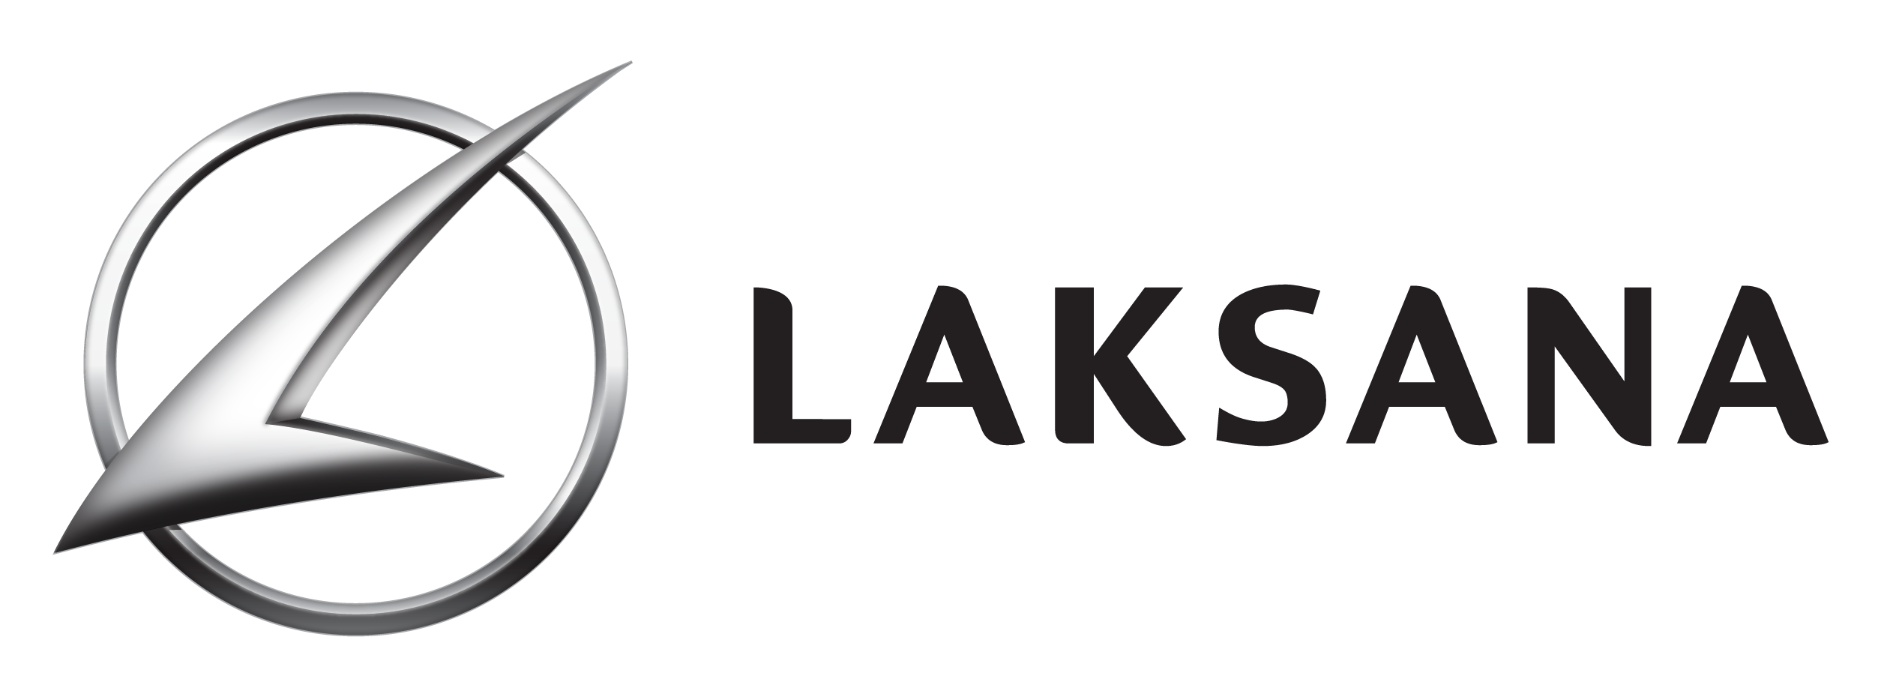 Laksana logo